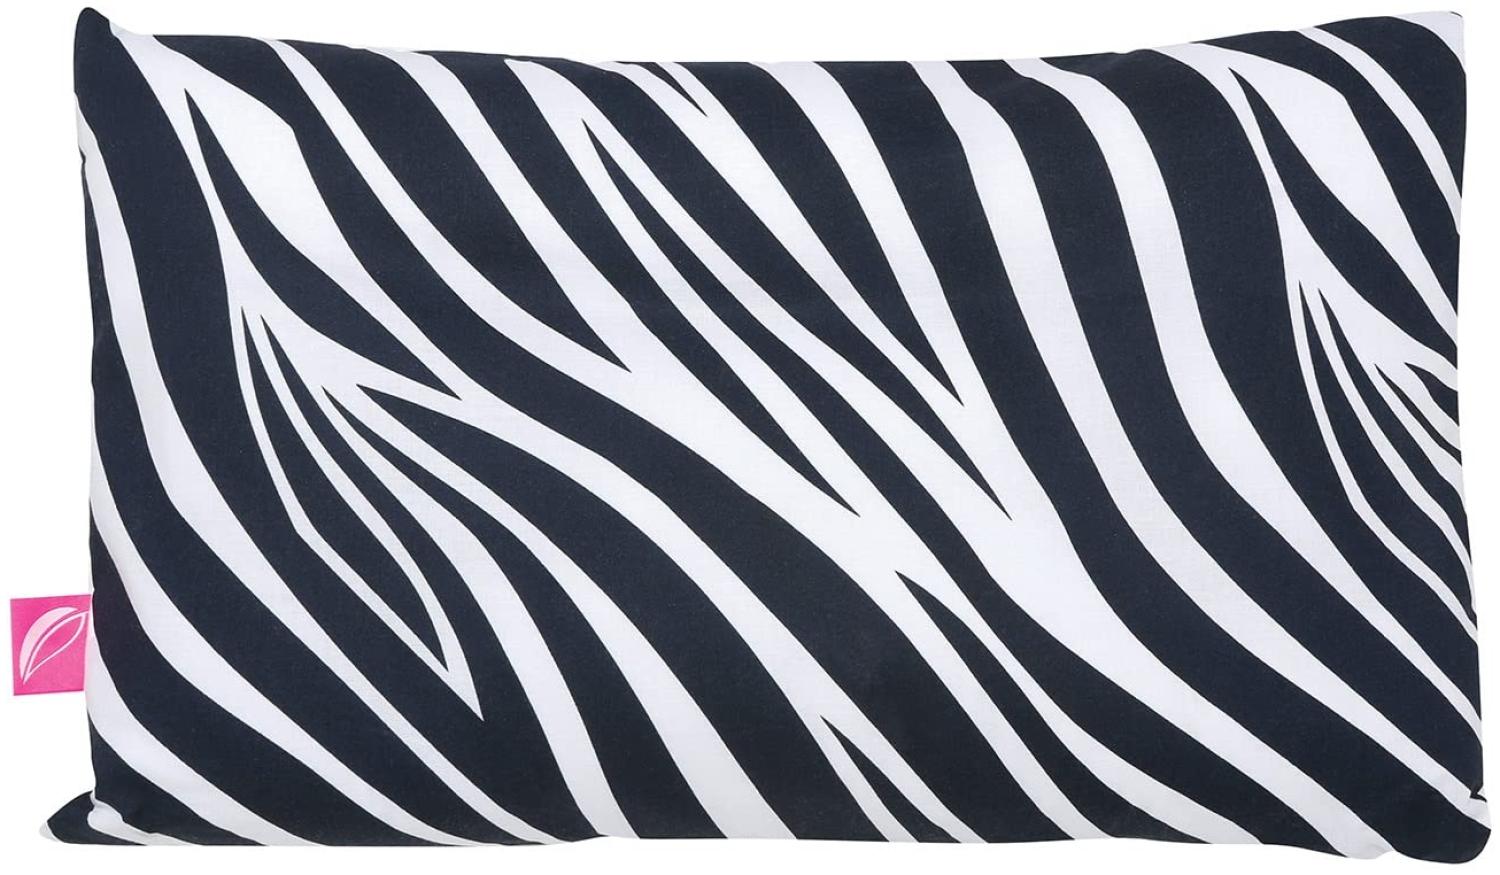 Babykopfkissen Kinderkopfkissen 35x40cm -Öko Tex Standard 100 - inkl. abnehmbarem Bezug aus 100% Baumwolle von Motherhood (Zebra dunkelblau) Bild 1